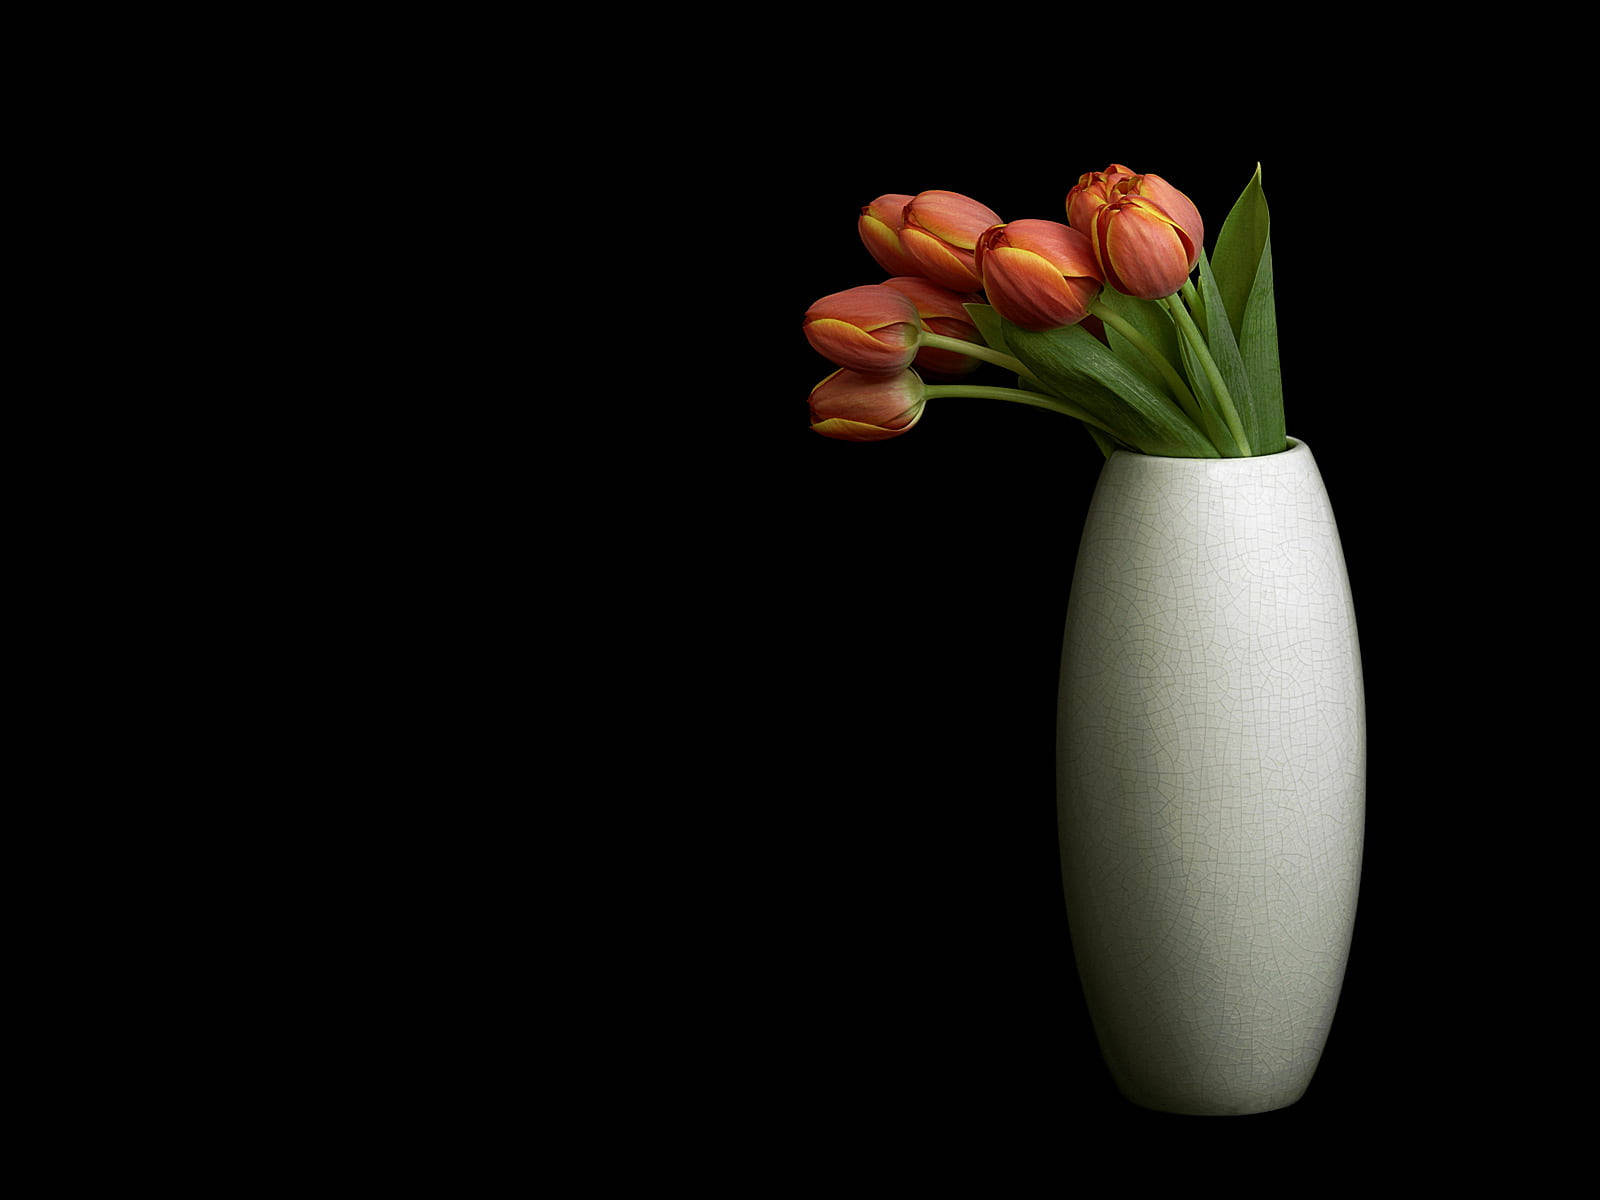 Hintergrundschwarz Mit Tulpen In Einer Vase Wallpaper